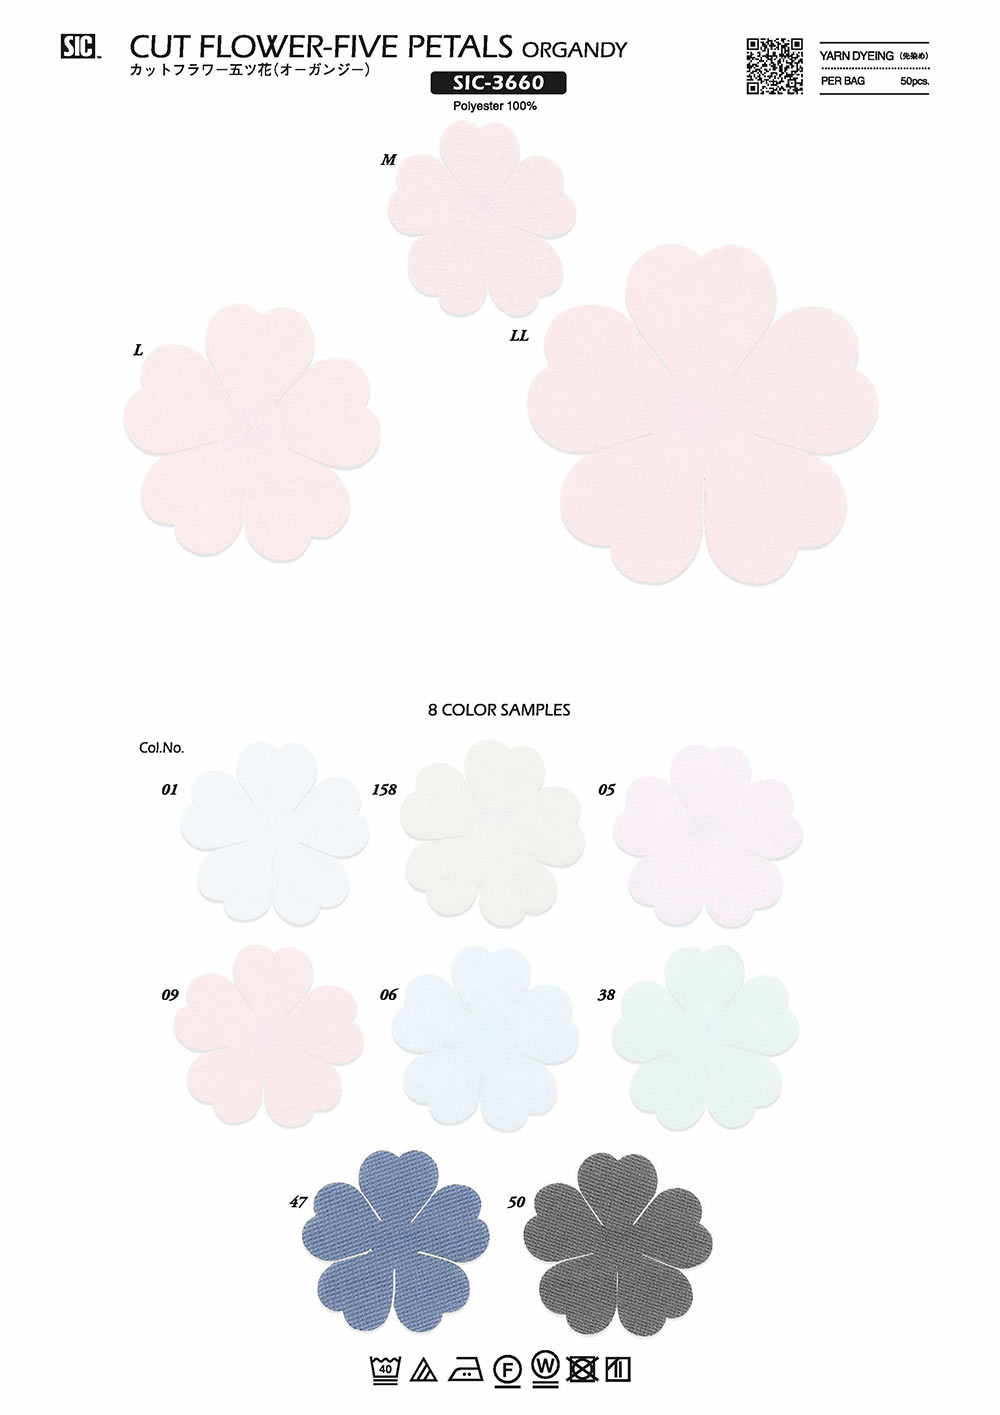 SIC-3660 Fleur Coupée Cinq Fleurs (Organy)[Marchandises Diverses Et Autres] SHINDO(SIC)